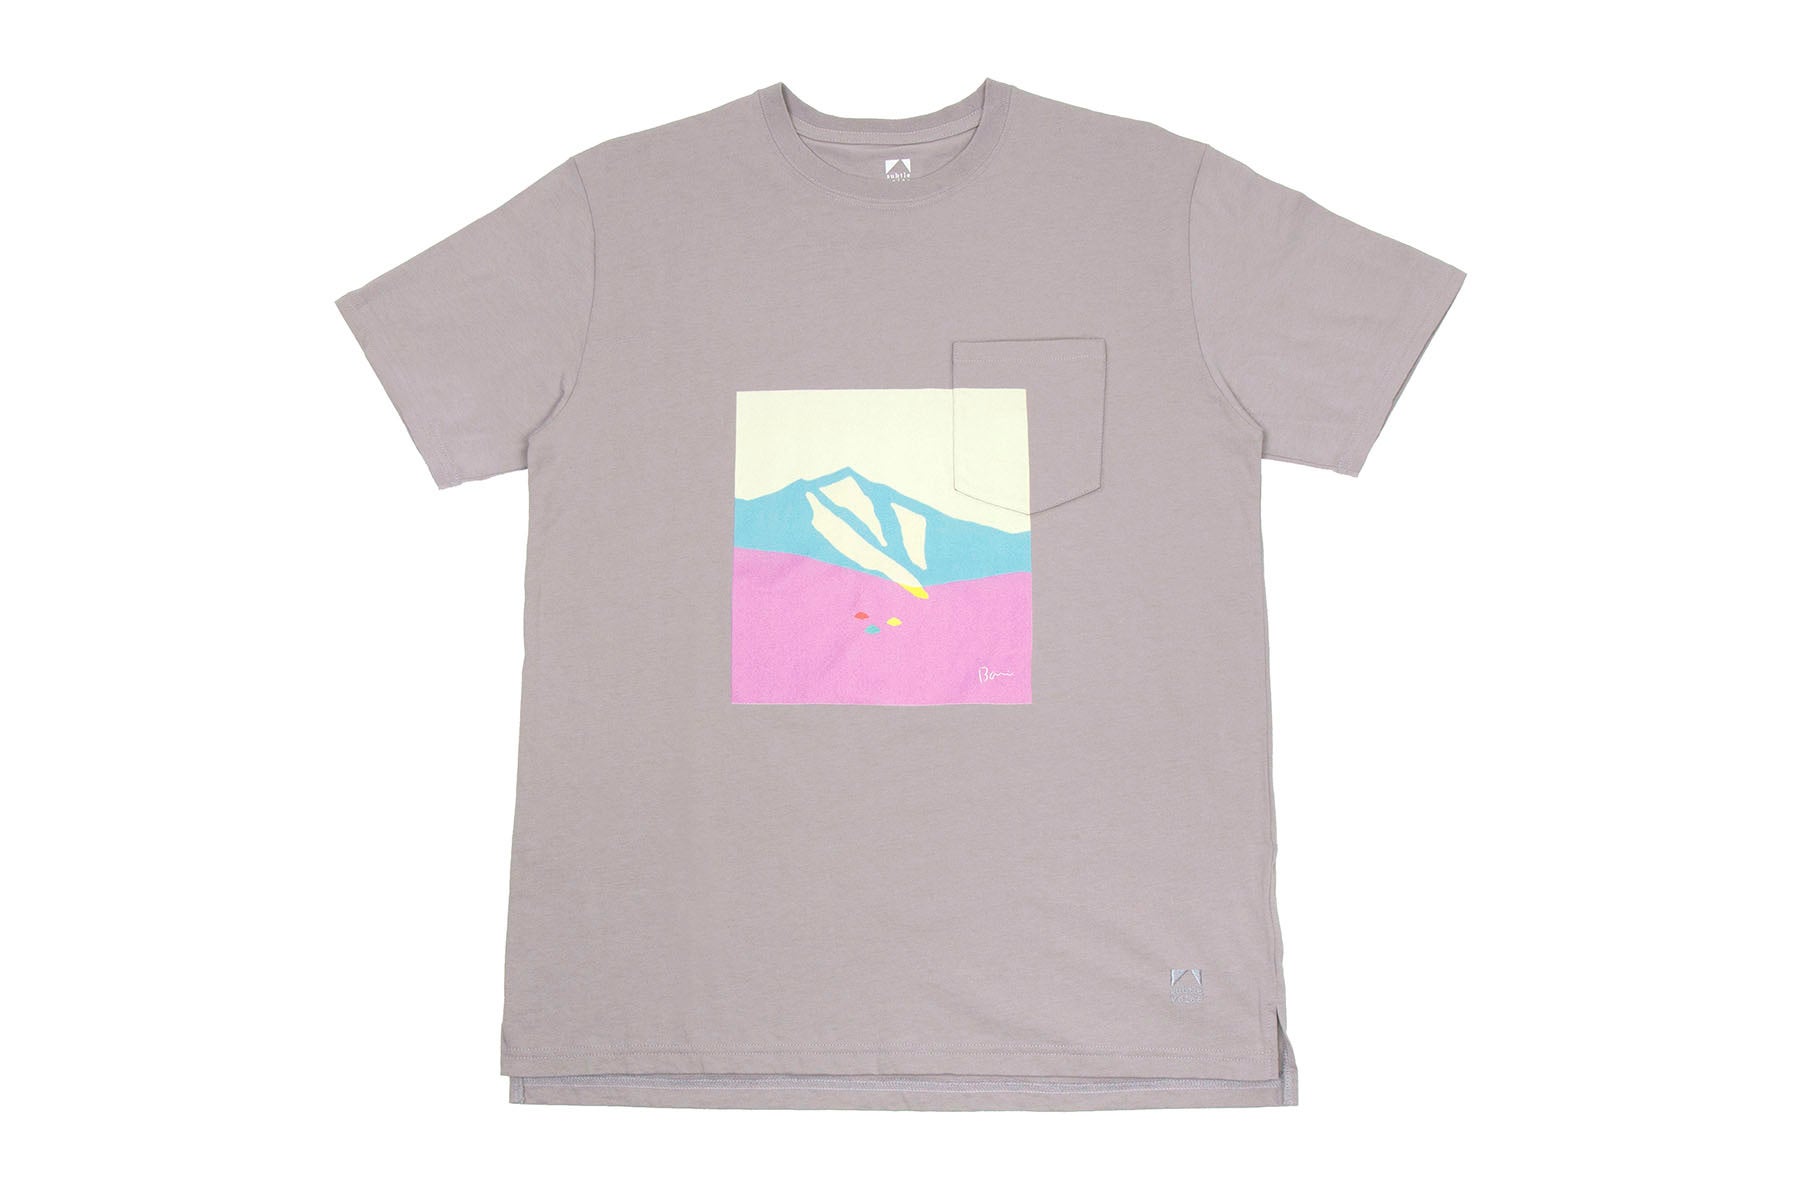 登山アパレルの本質的な価値を追求する日本発のブランド「サトルボイス」から、天然コットン本来の快適性と機能性を最大限に引き出したパフォーマンスTシャツの新モデルが登場。のサブ画像9